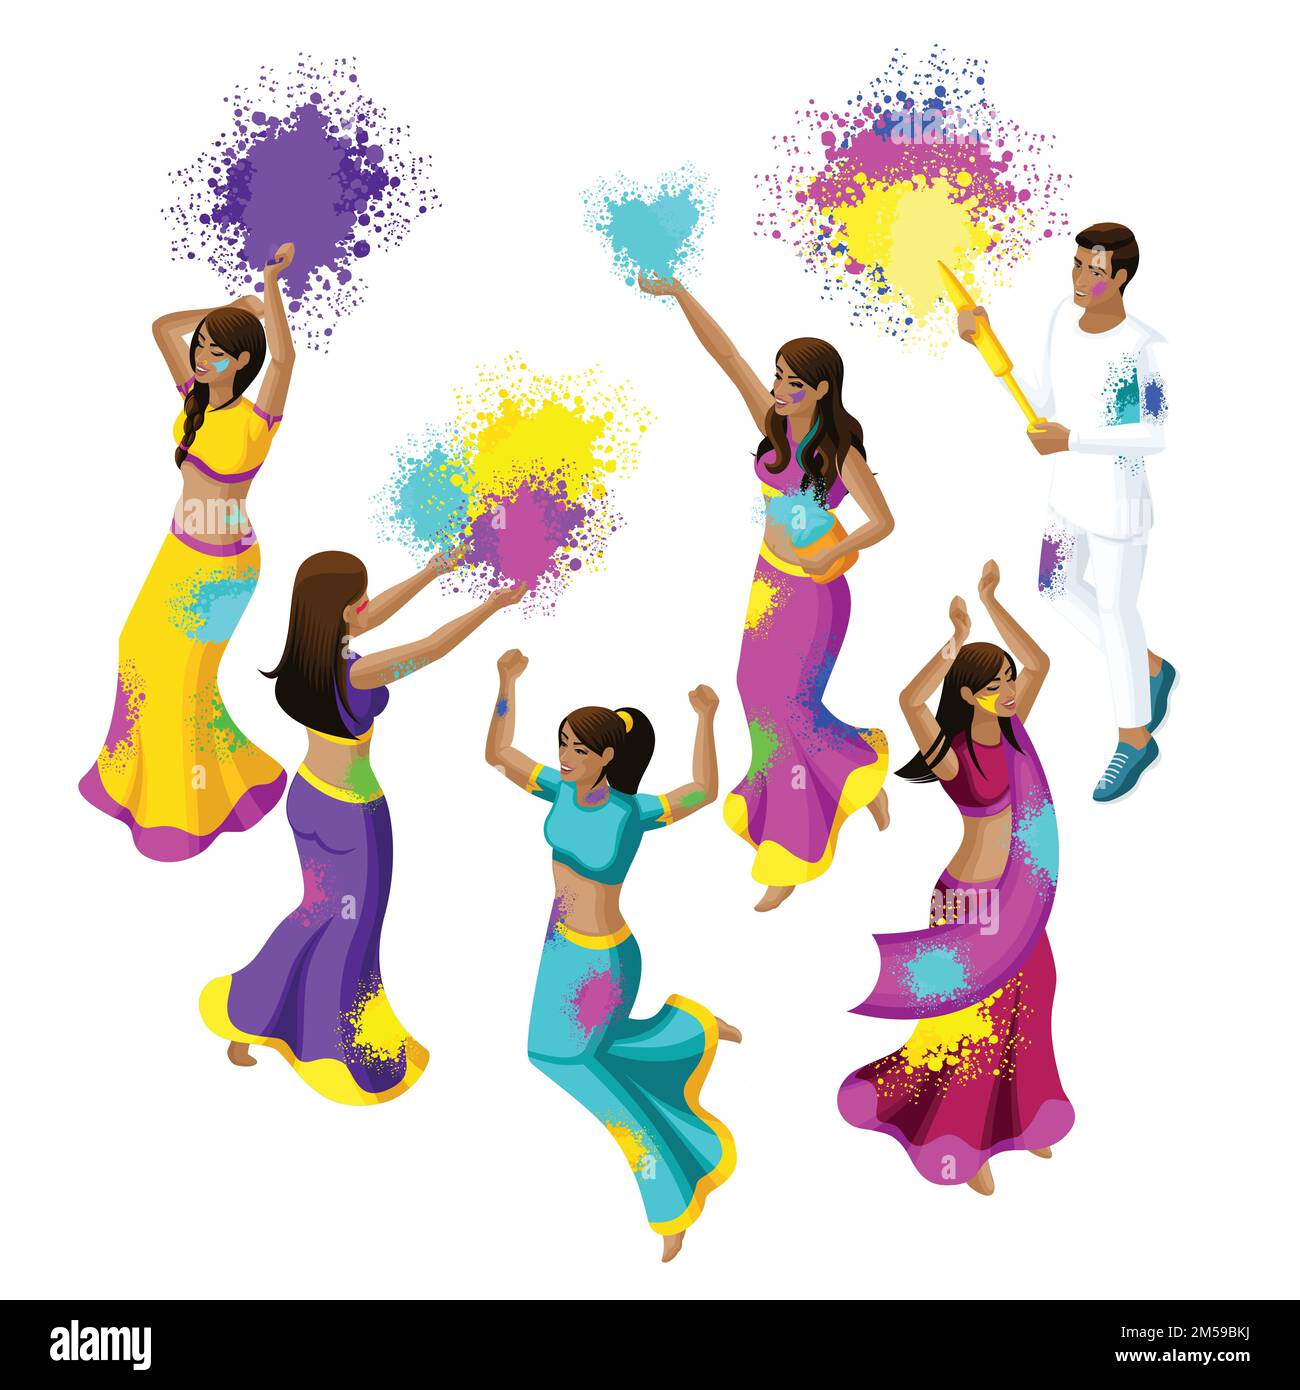 Isometrisches Frühlingsfest, Festival der Farben, Mädchen und Jungs von indischen Frauen springen, Freude, Glück, bunten Puder werfen, schöne Bewegungen, sar Stock Vektor